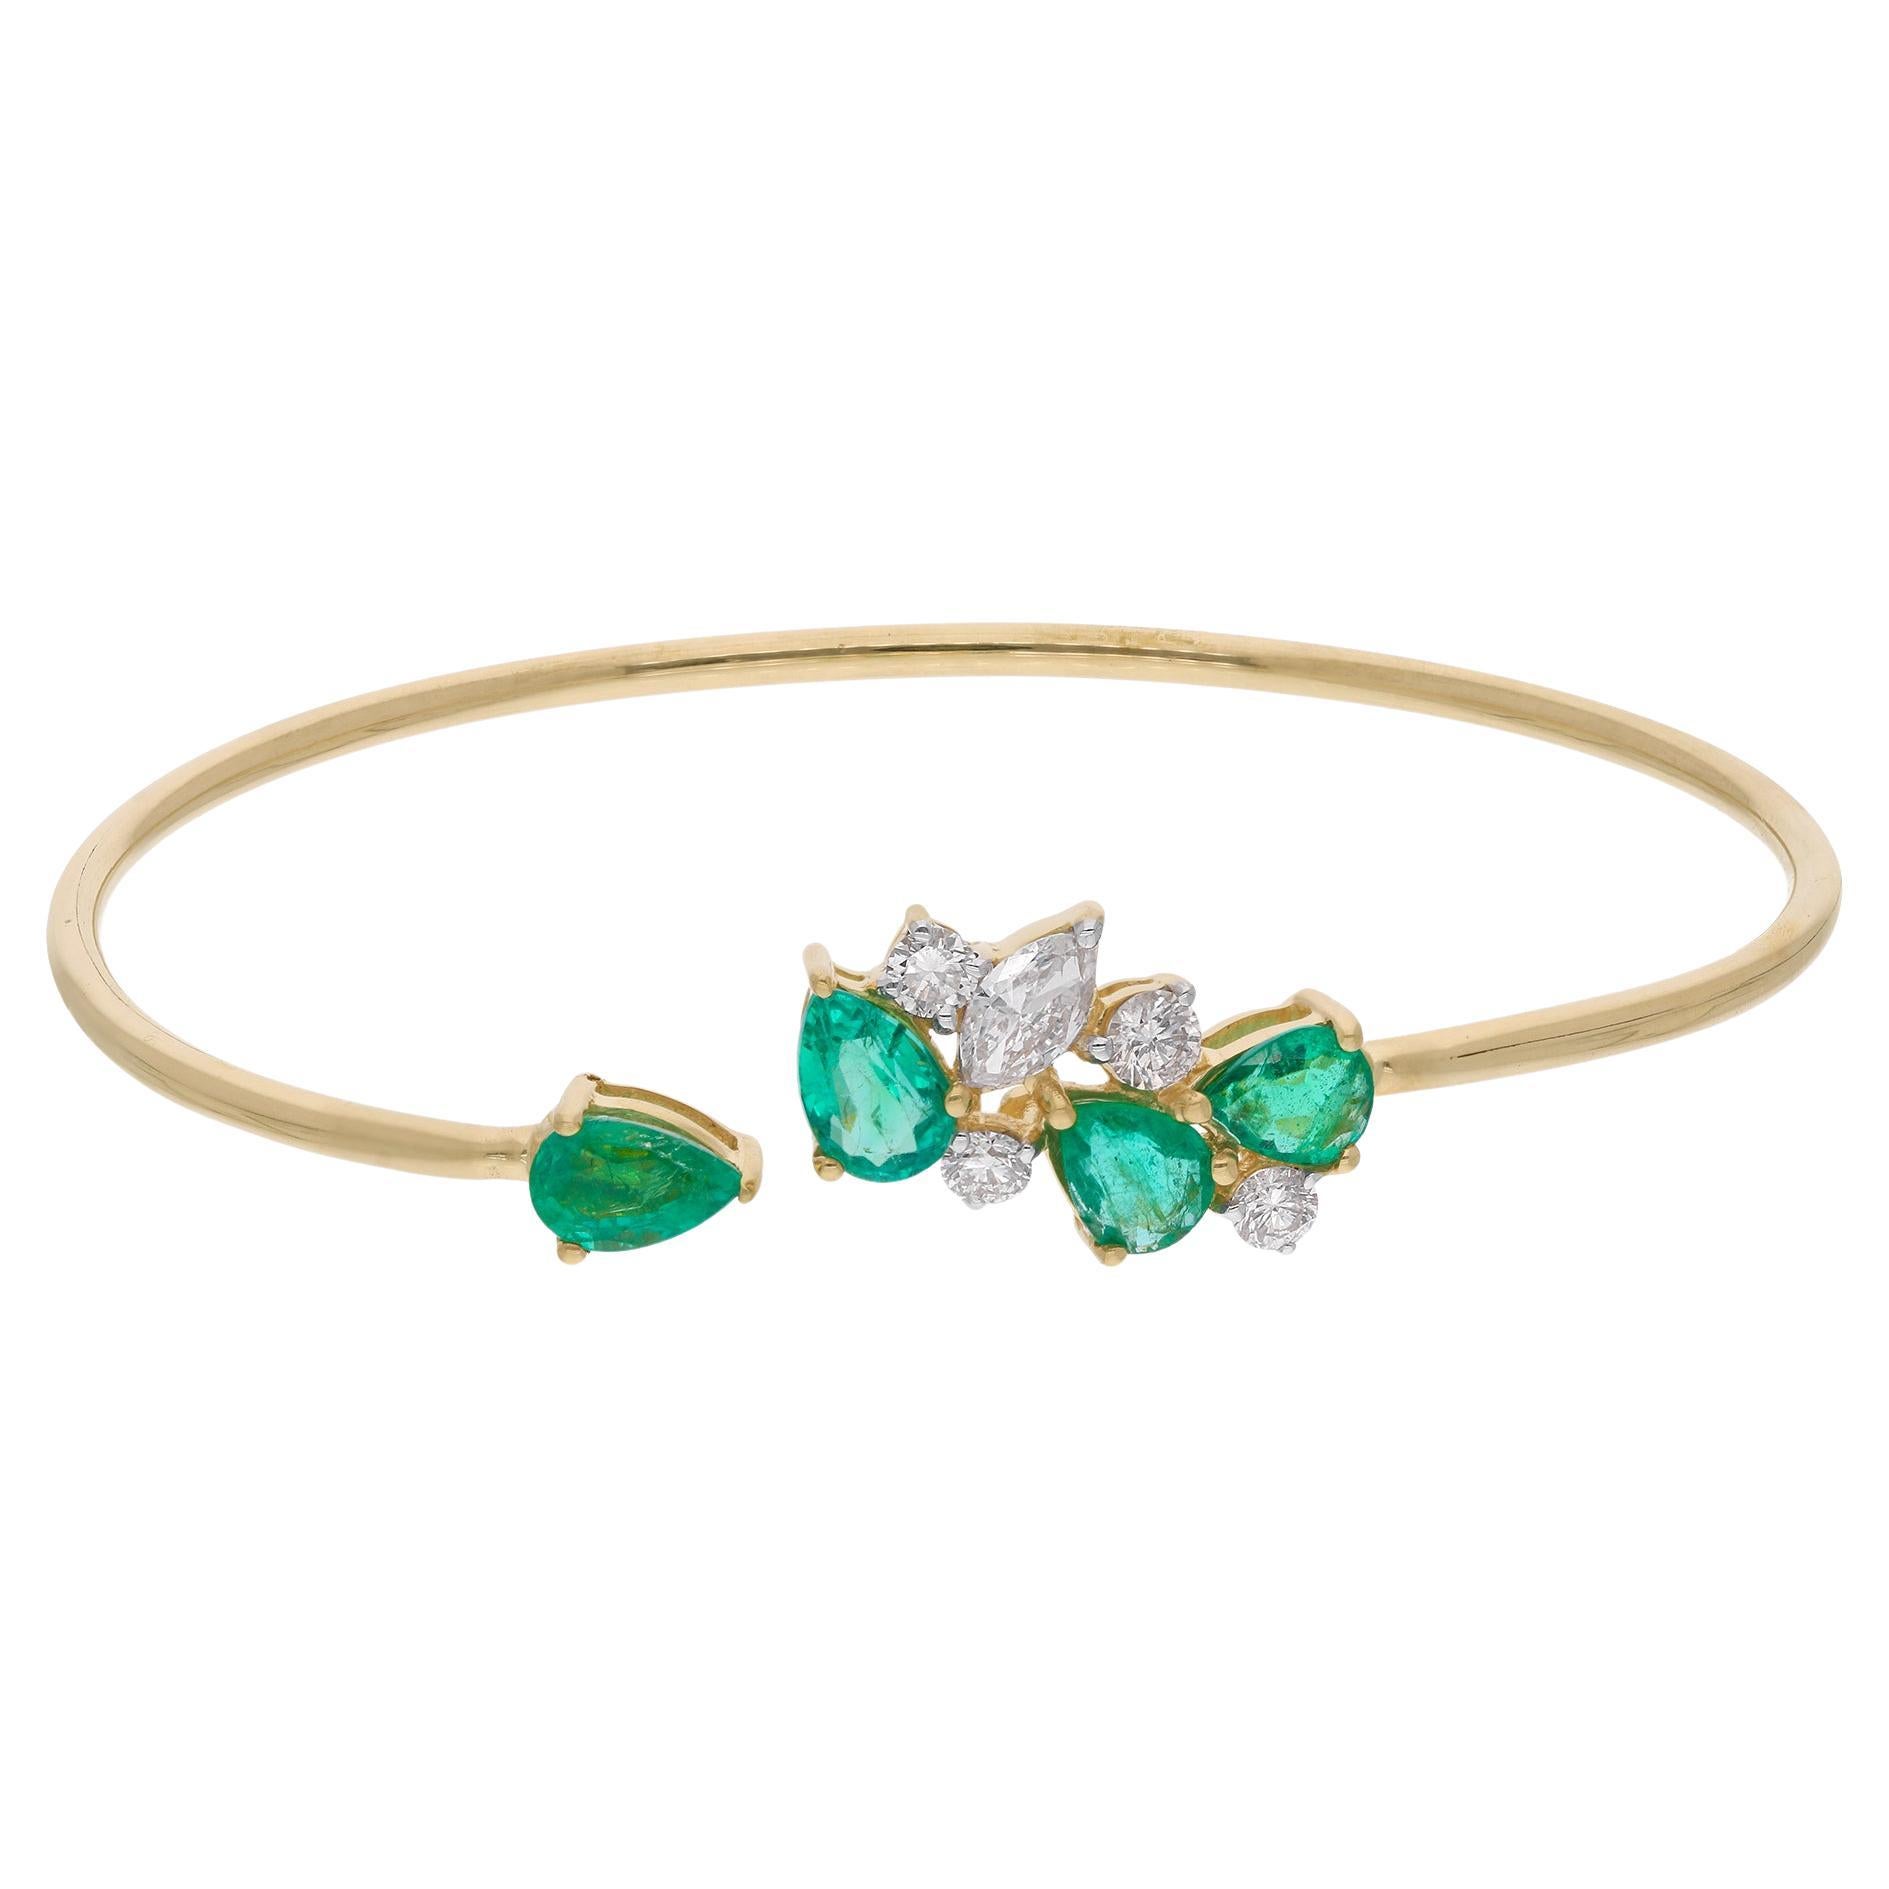 Zambian Emerald Gemstone Cuff Bangle Bracelet Diamond 18 Kt Yellow Gold Jewelry For Sale